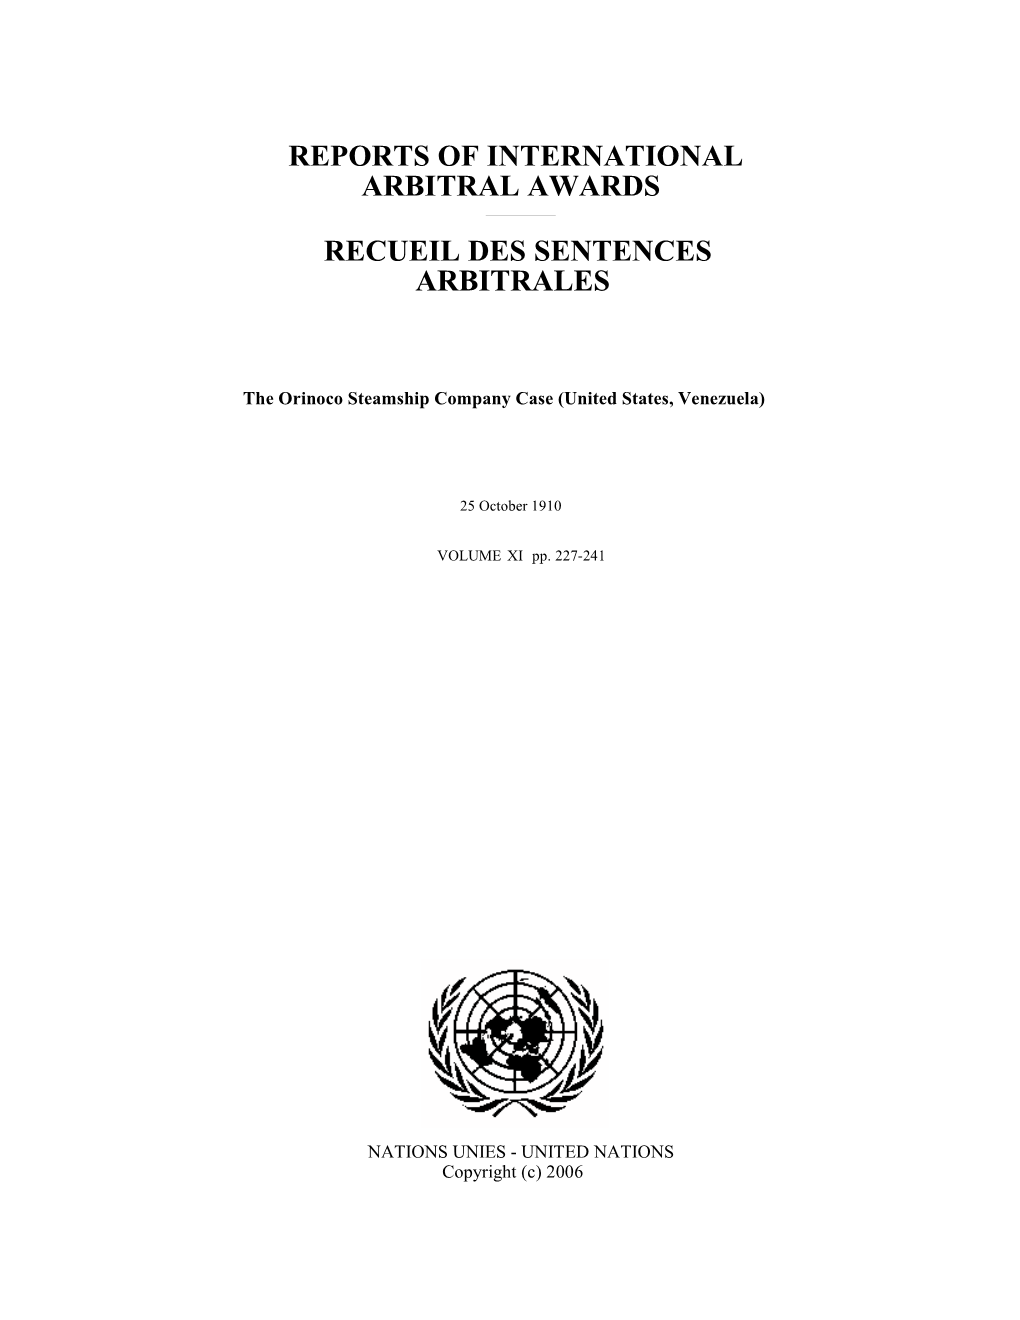 The Orinoco Steamship Company Case (United States, Venezuela)